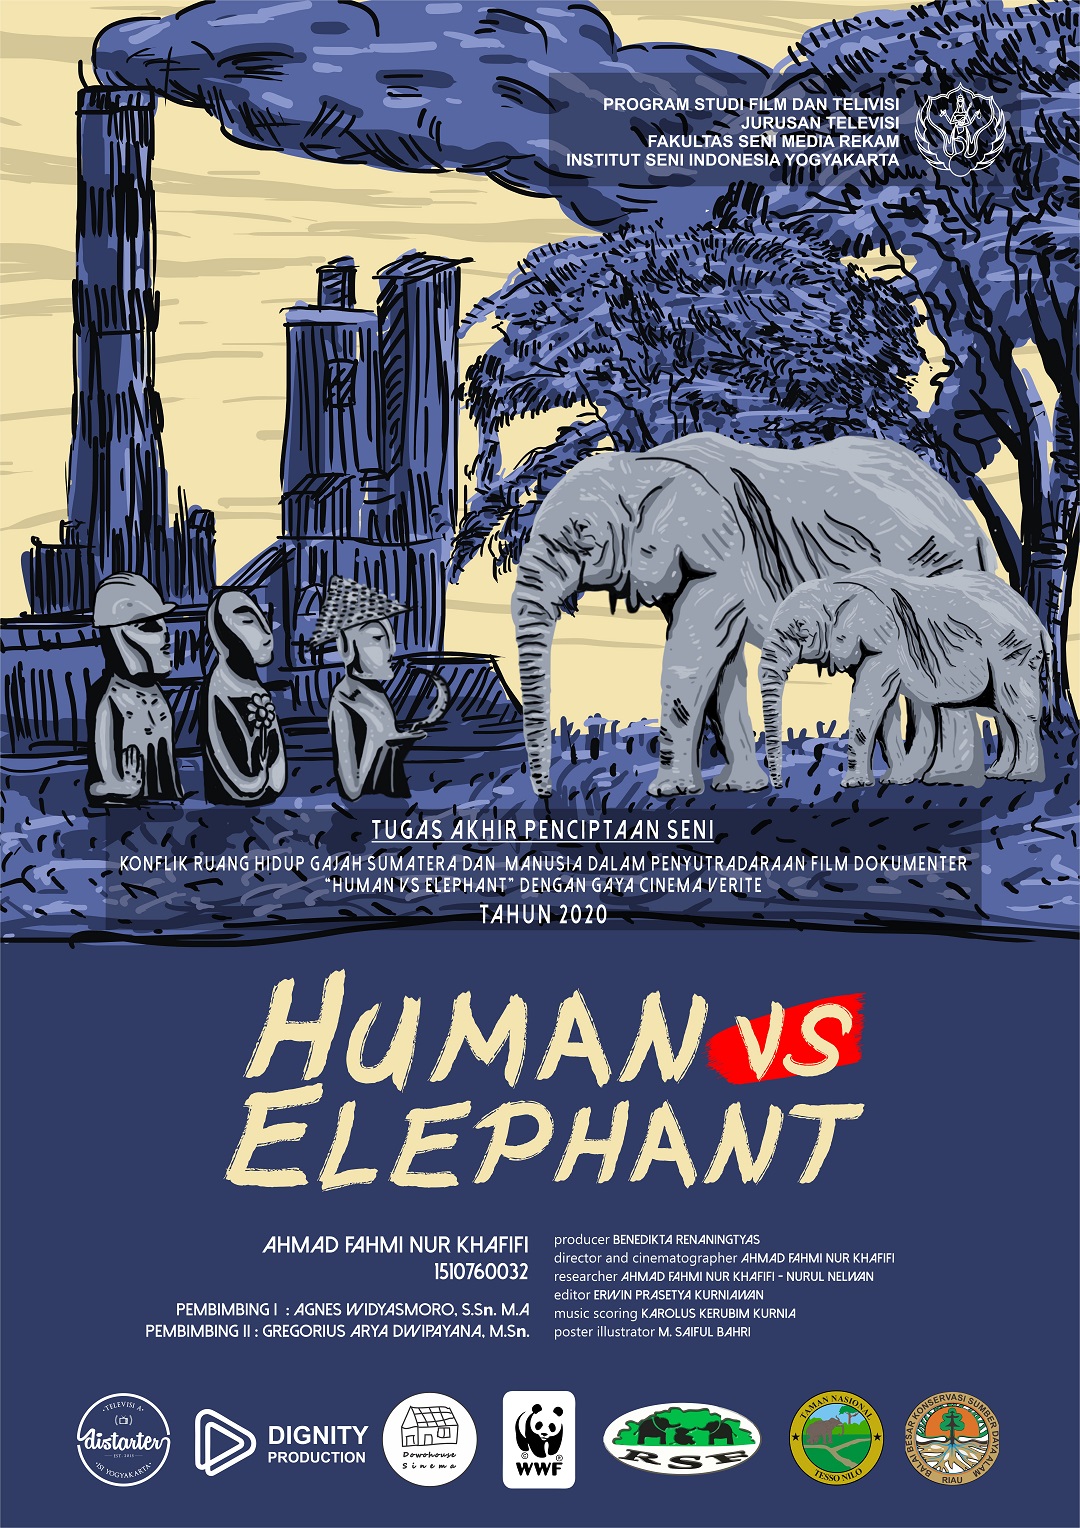 Human VS Elephant, oleh Ahmad Fahmi Nur Khafifi.